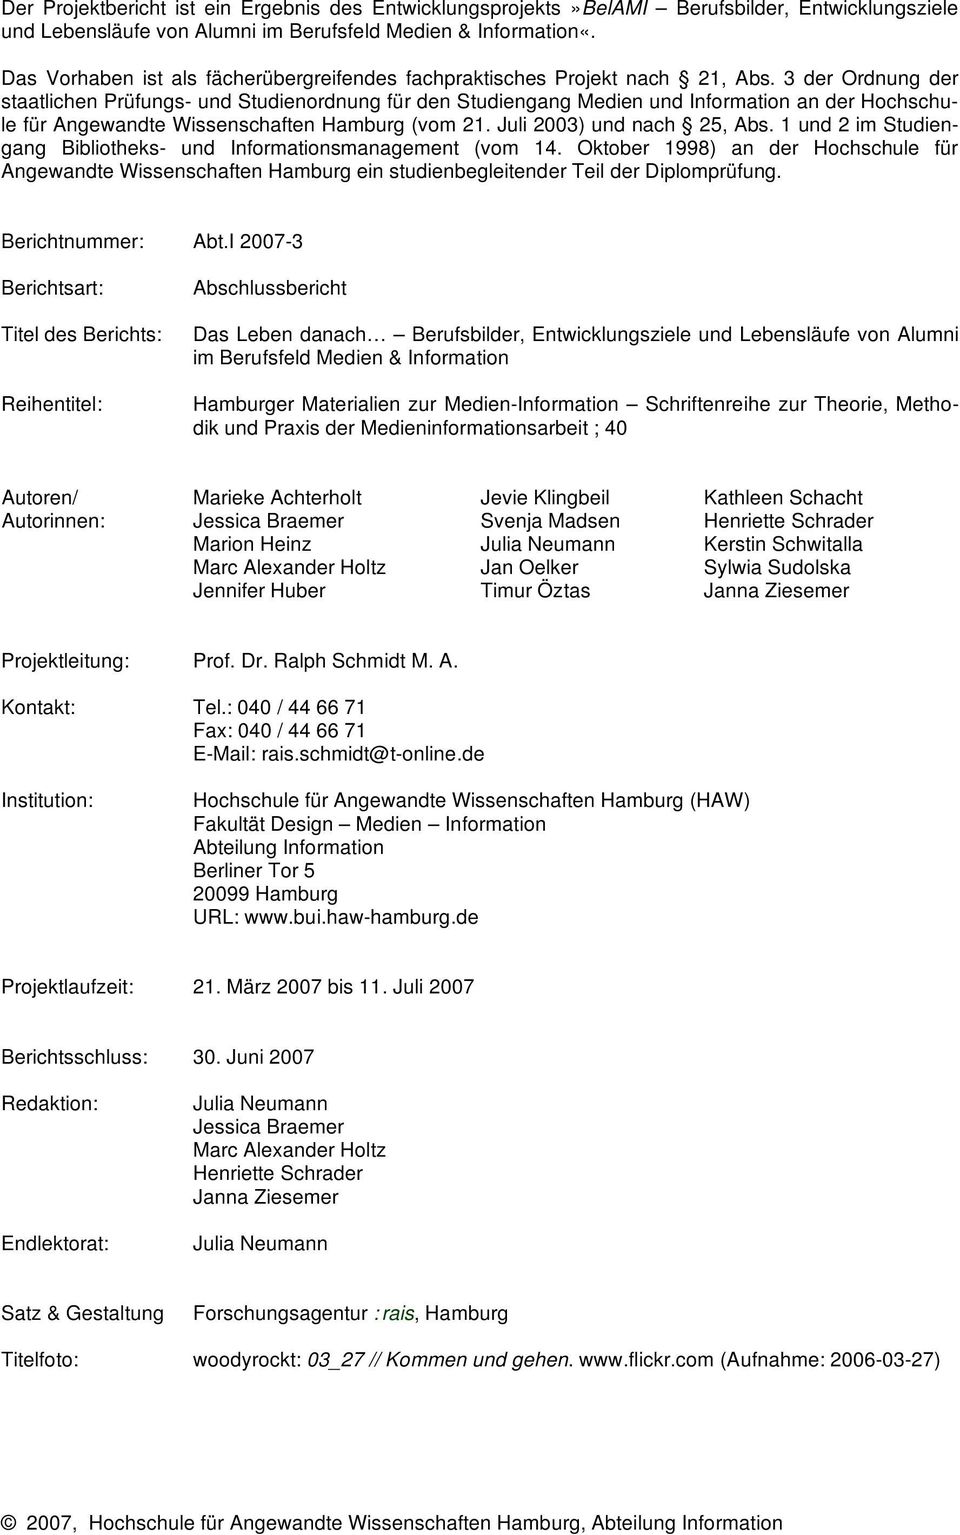 3 der Ordnung der staatlichen Prüfungs- und Studienordnung für den Studiengang Medien und Information an der Hochschule für Angewandte Wissenschaften Hamburg (vom 21. Juli 2003) und nach 25, Abs.